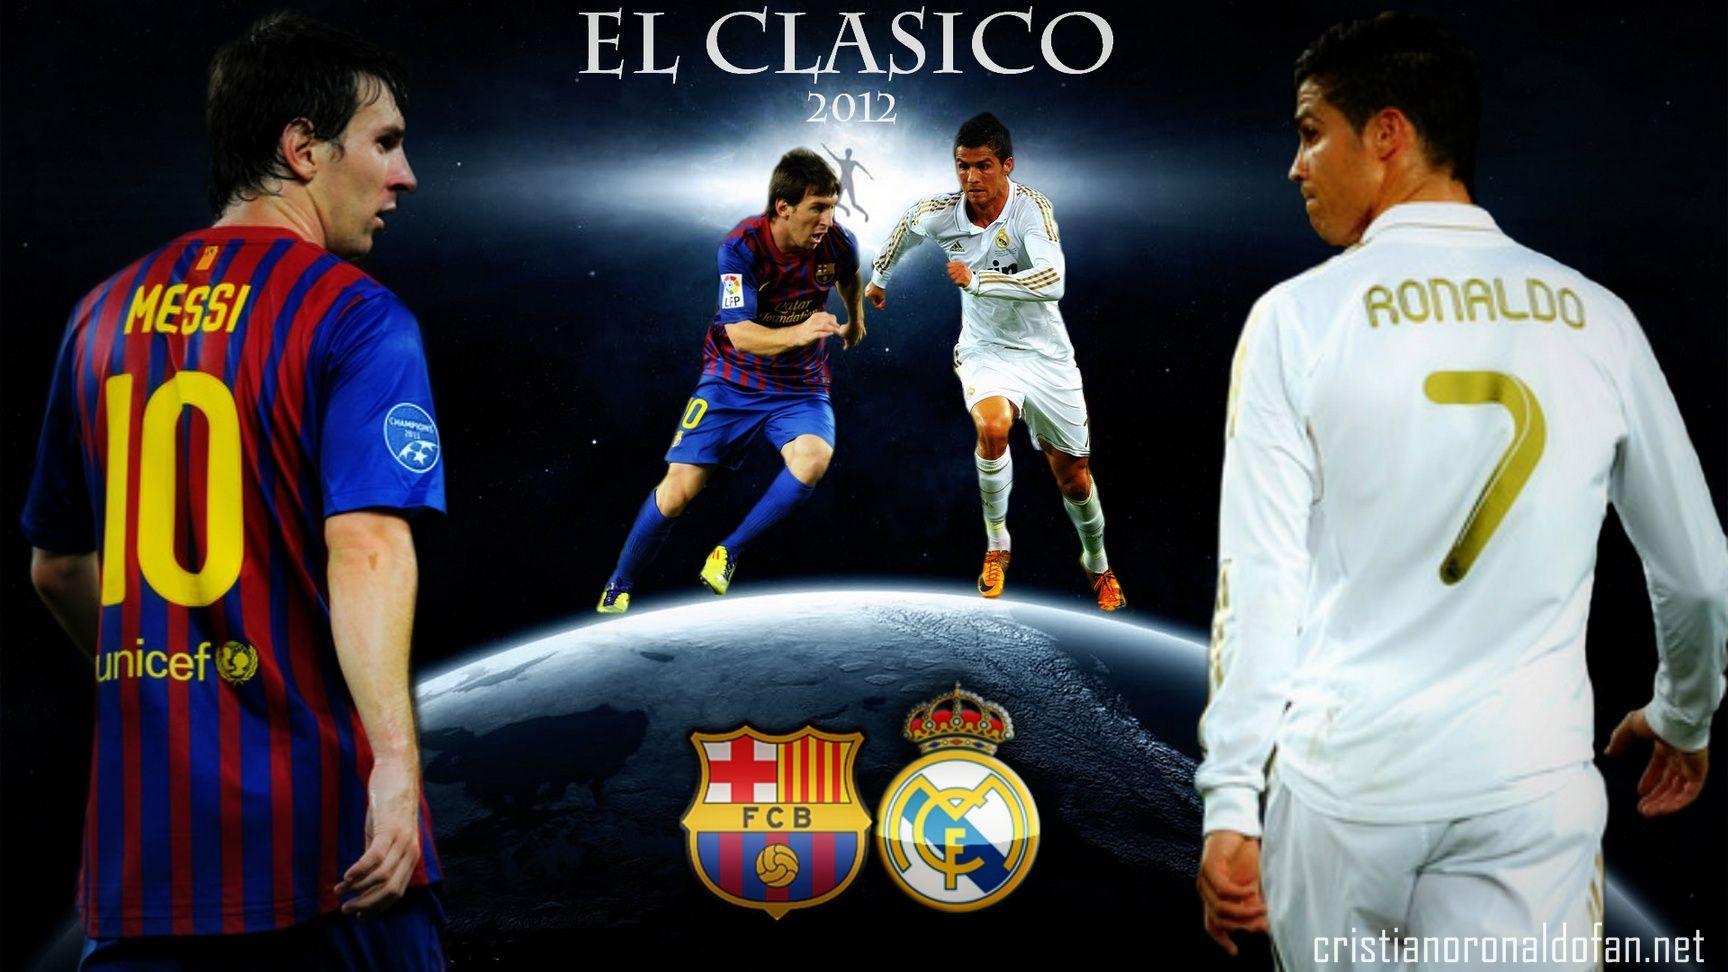 El Clasico Wallpaper. Cristiano Ronaldo fan